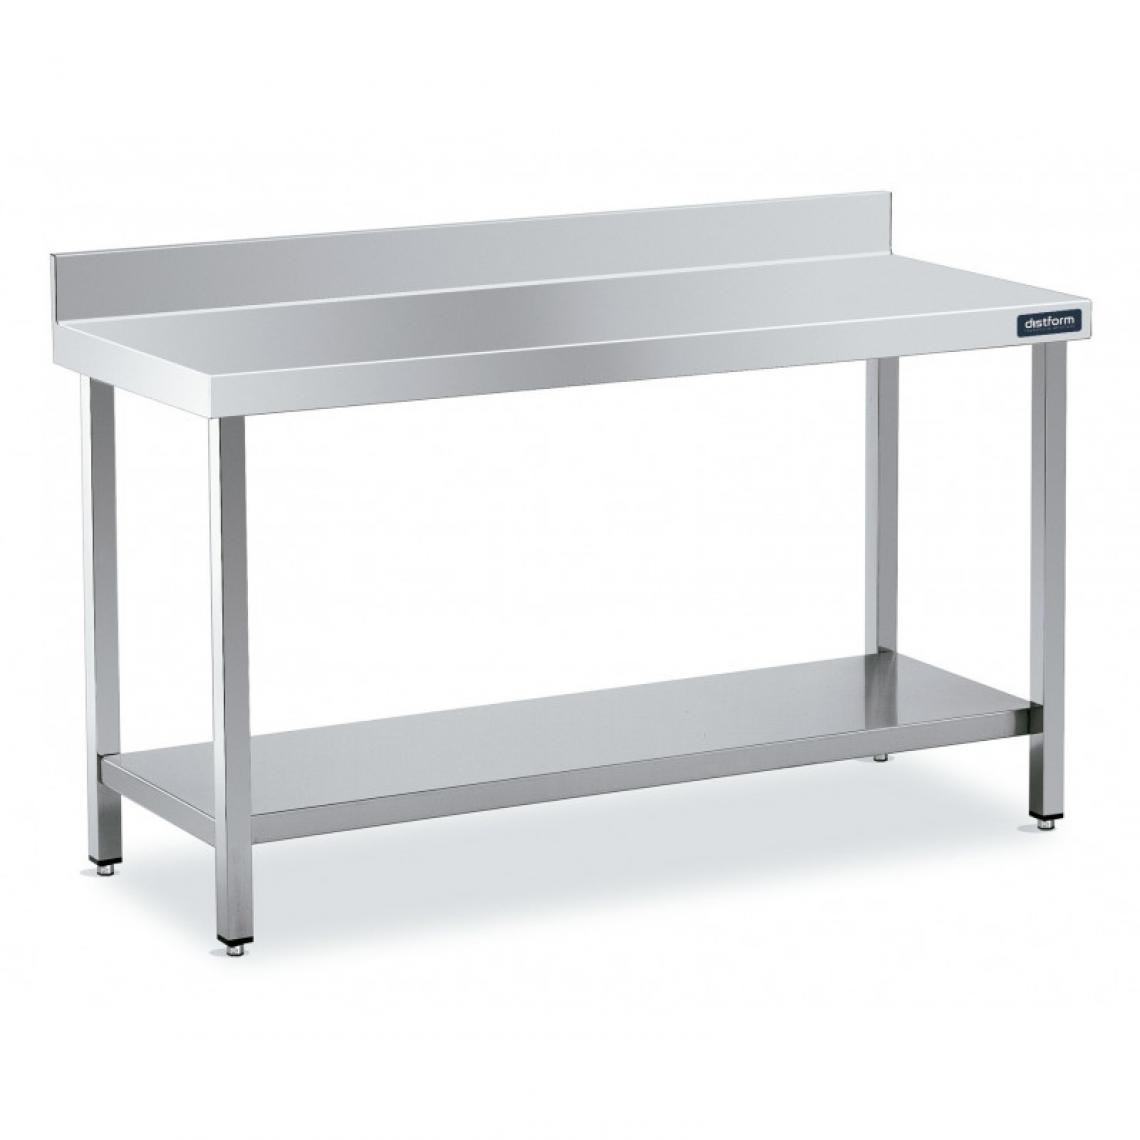 DISTFORM - Table Adossée en Inox avec 1 étagère Profondeur 550 mm - Distform - Acier inoxydable2200x550 - Tables à manger